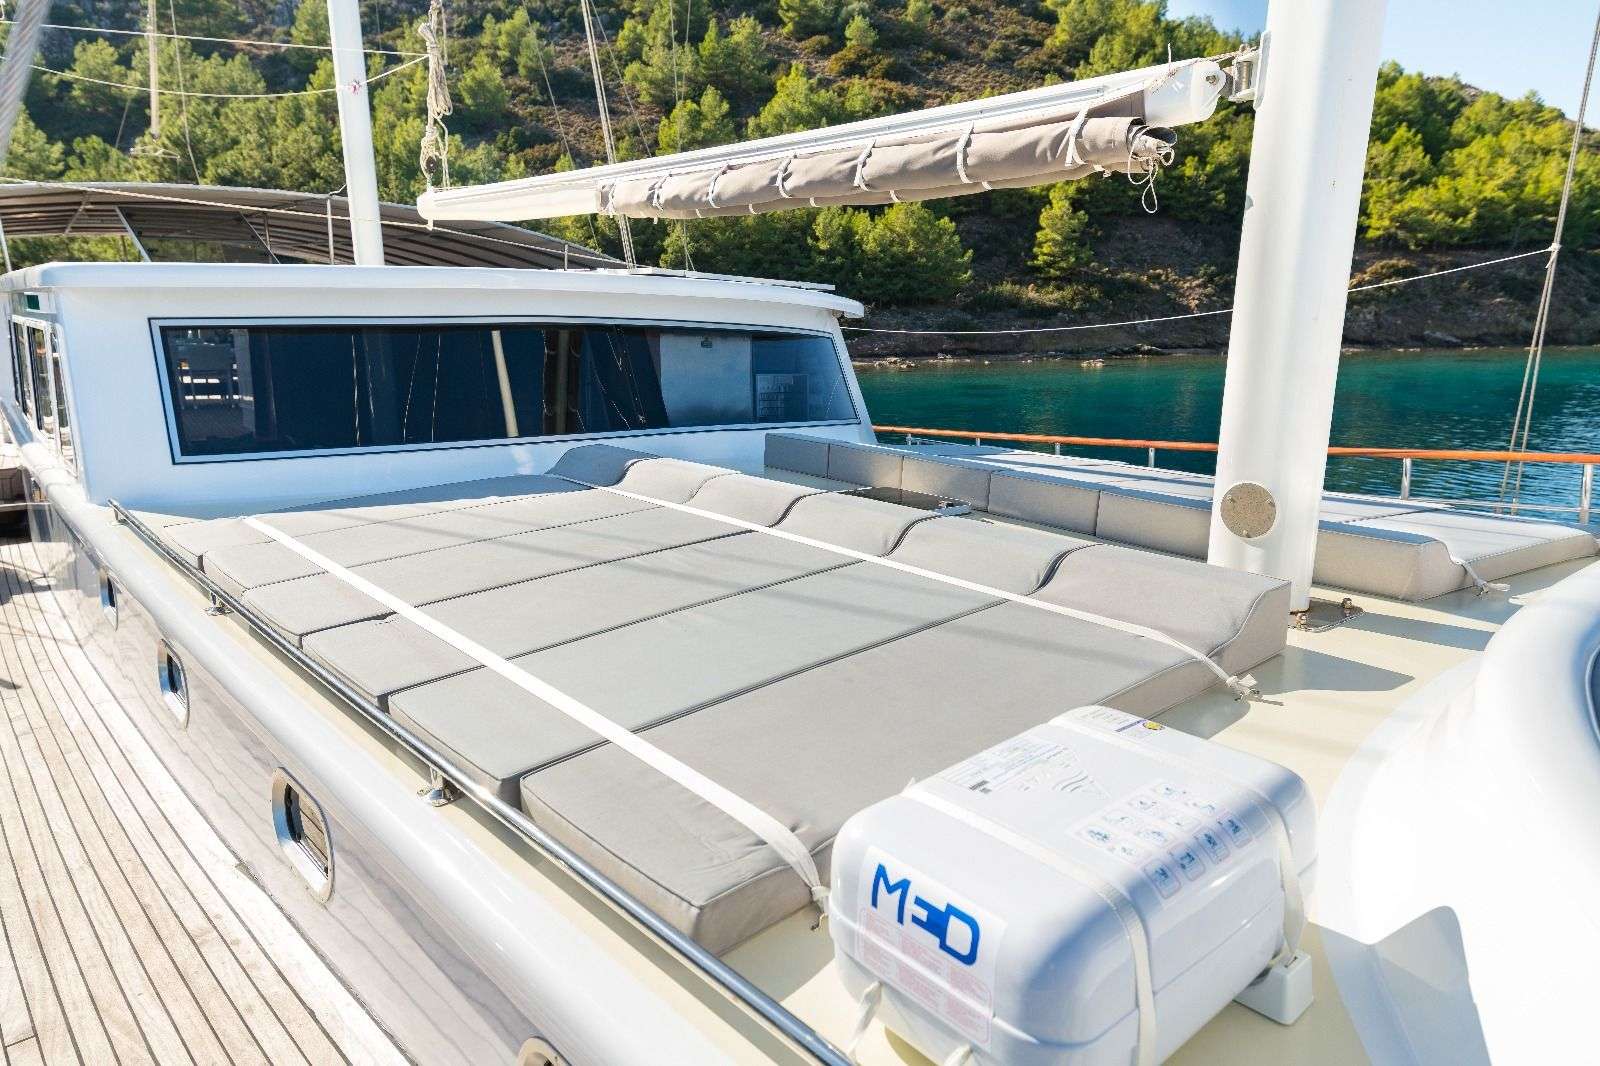 koray ege - Yacht Charter Milos & Boat hire in Greece & Turkey 3